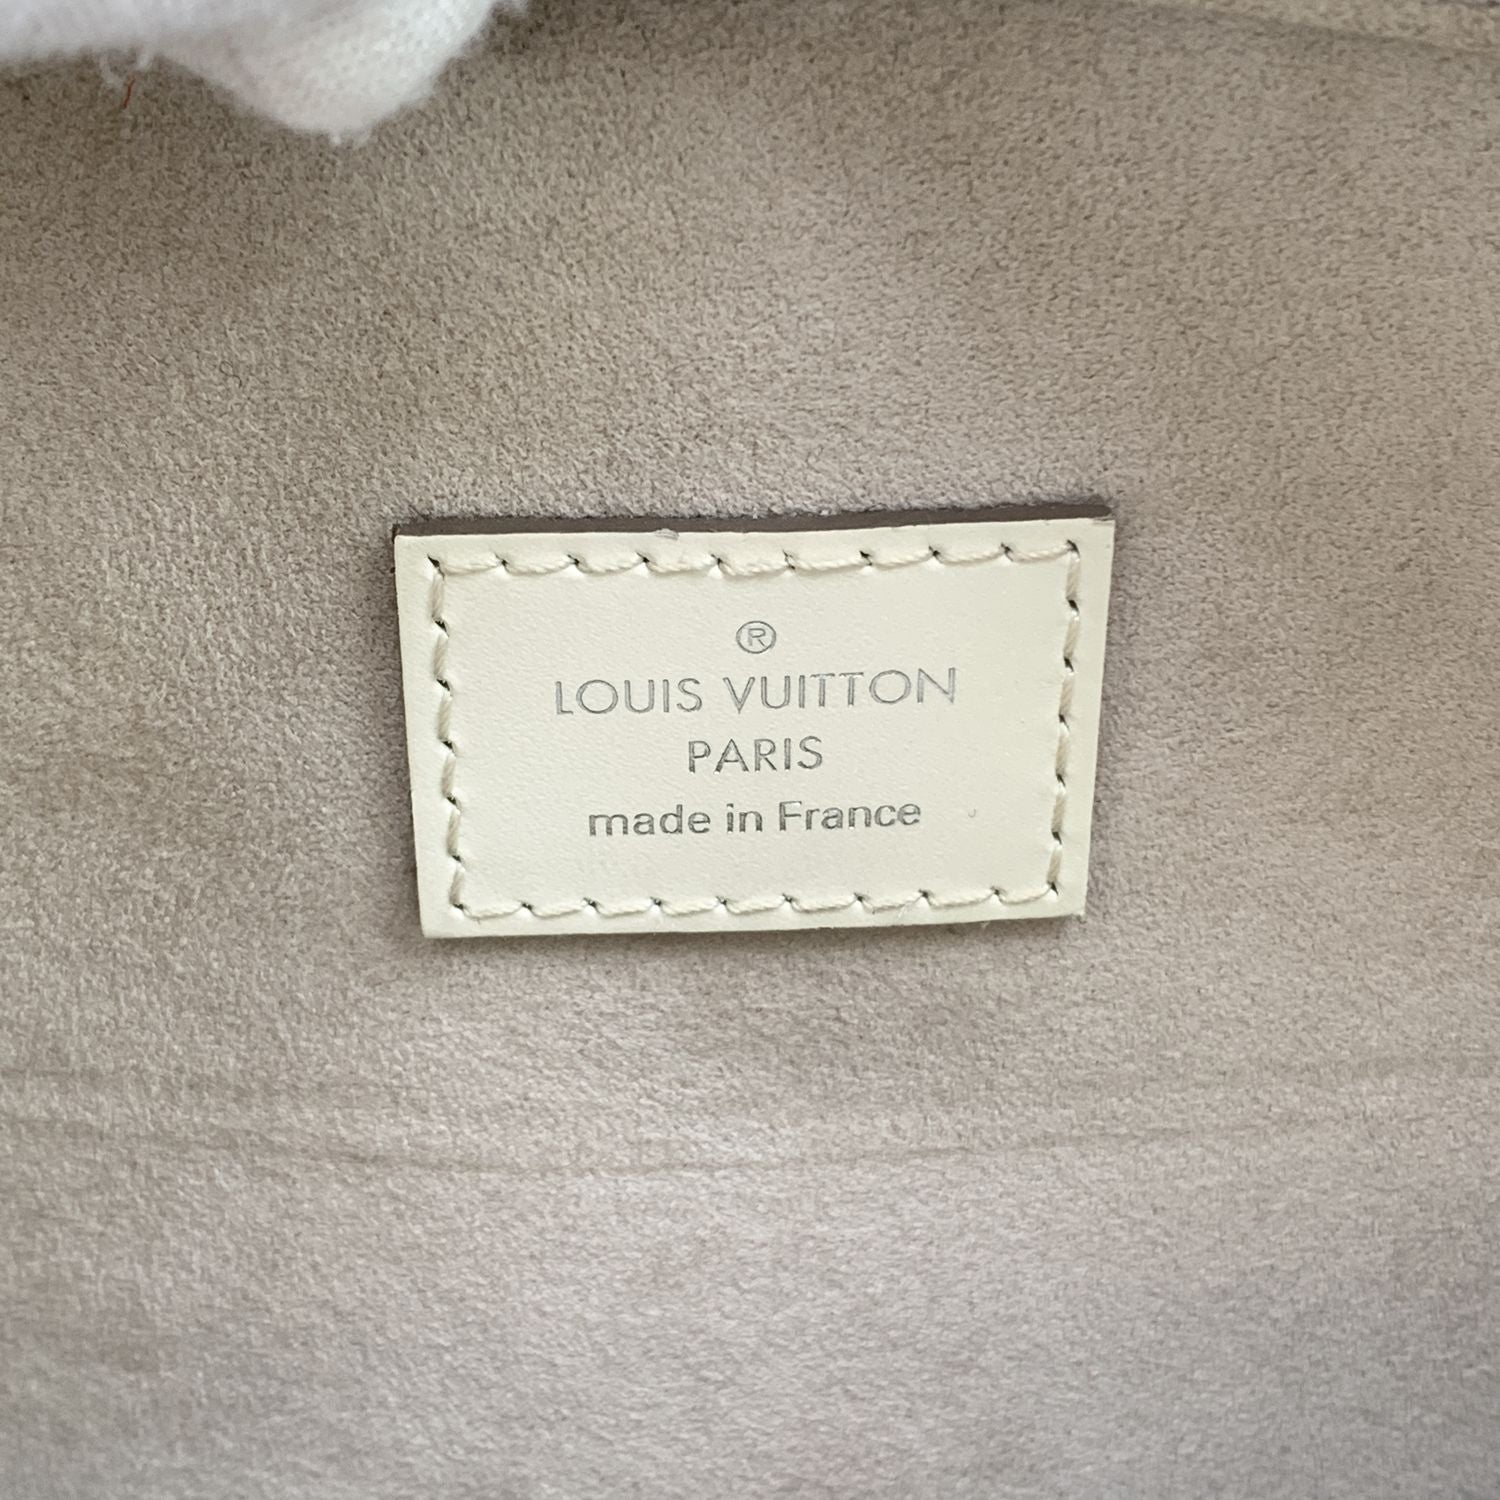 LOUIS VUITTON Handbags